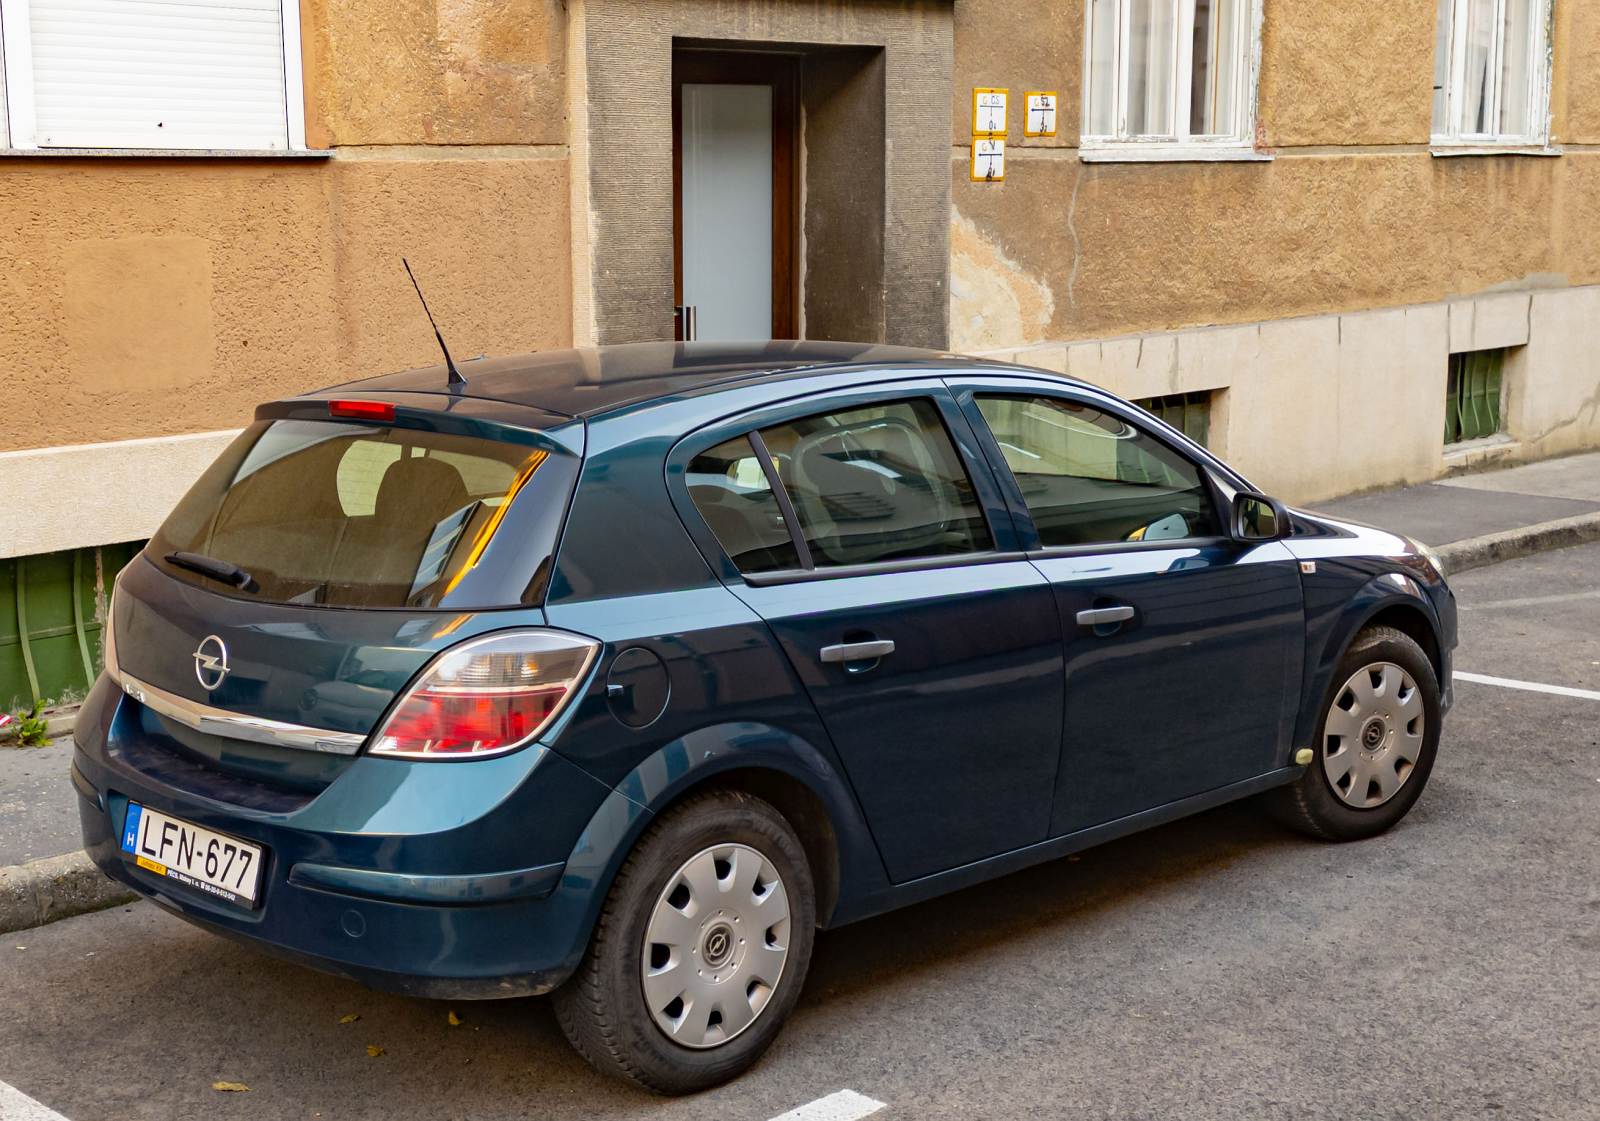 Rückansicht / Seitenansicht: Opel Astra H in der Farbe Petrolblau / Peacock. Die Aufnahme stammt von Oktober, 2022.